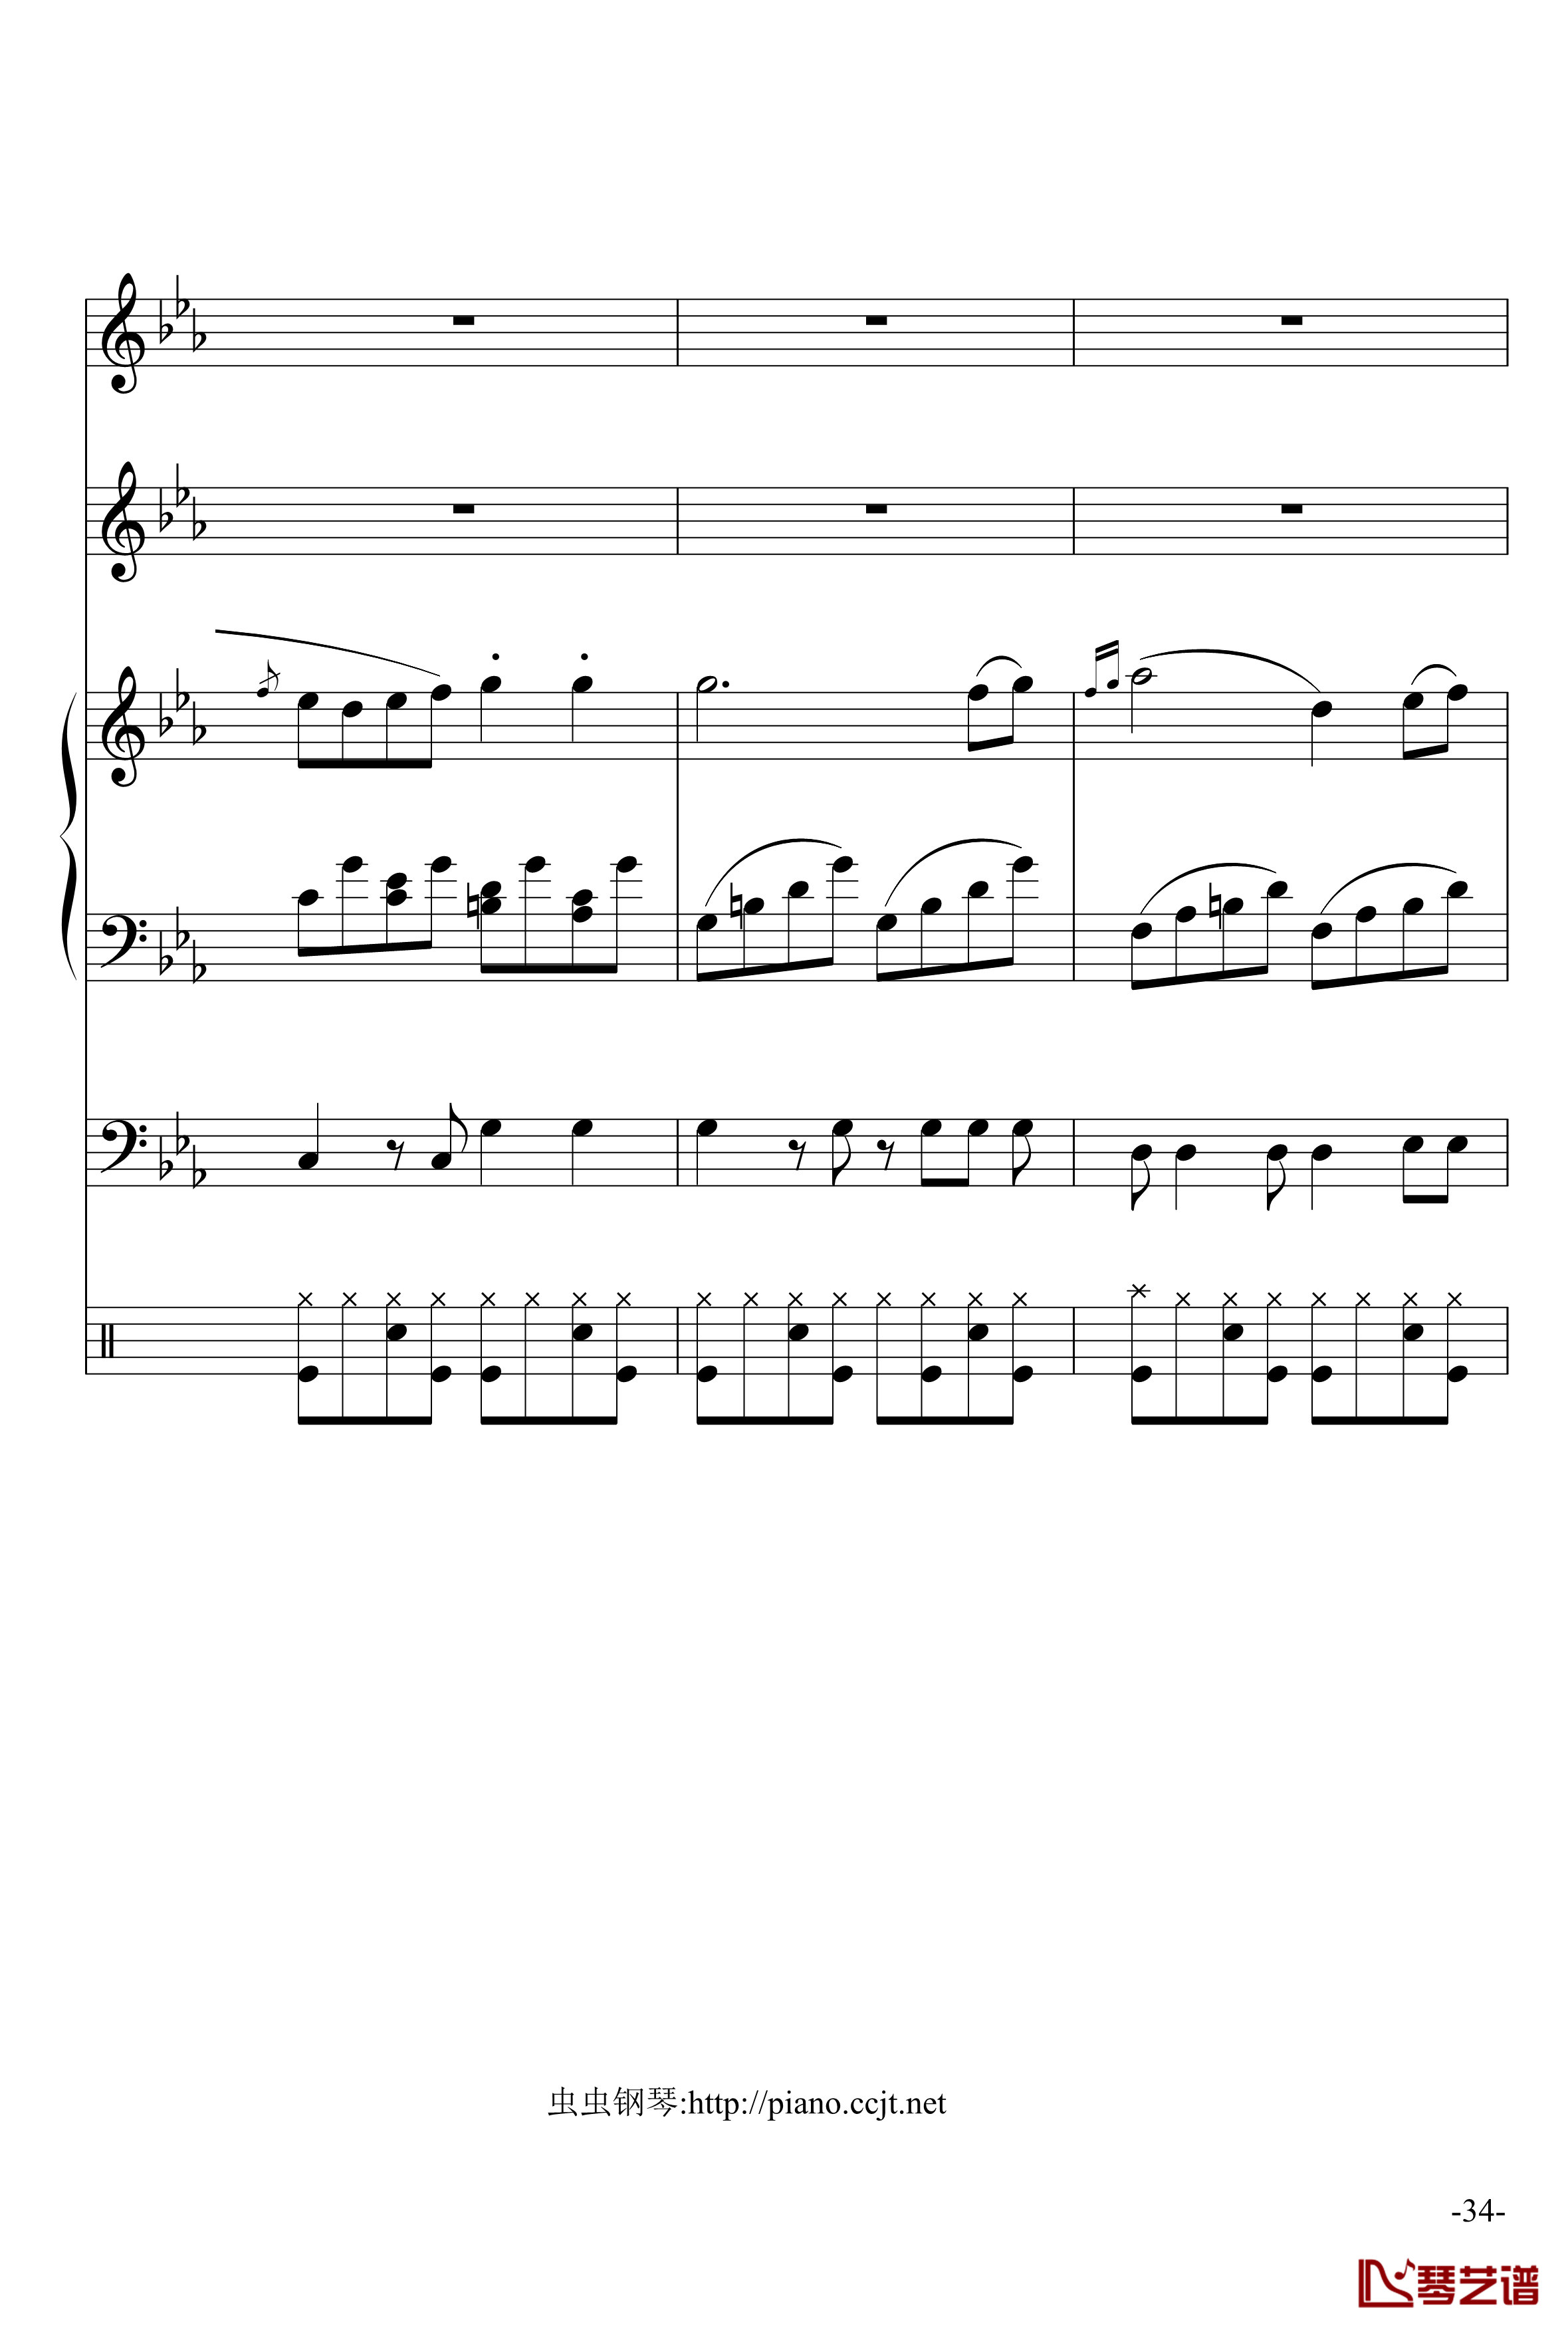 悲怆奏鸣曲钢琴谱-加小乐队-贝多芬-beethoven34